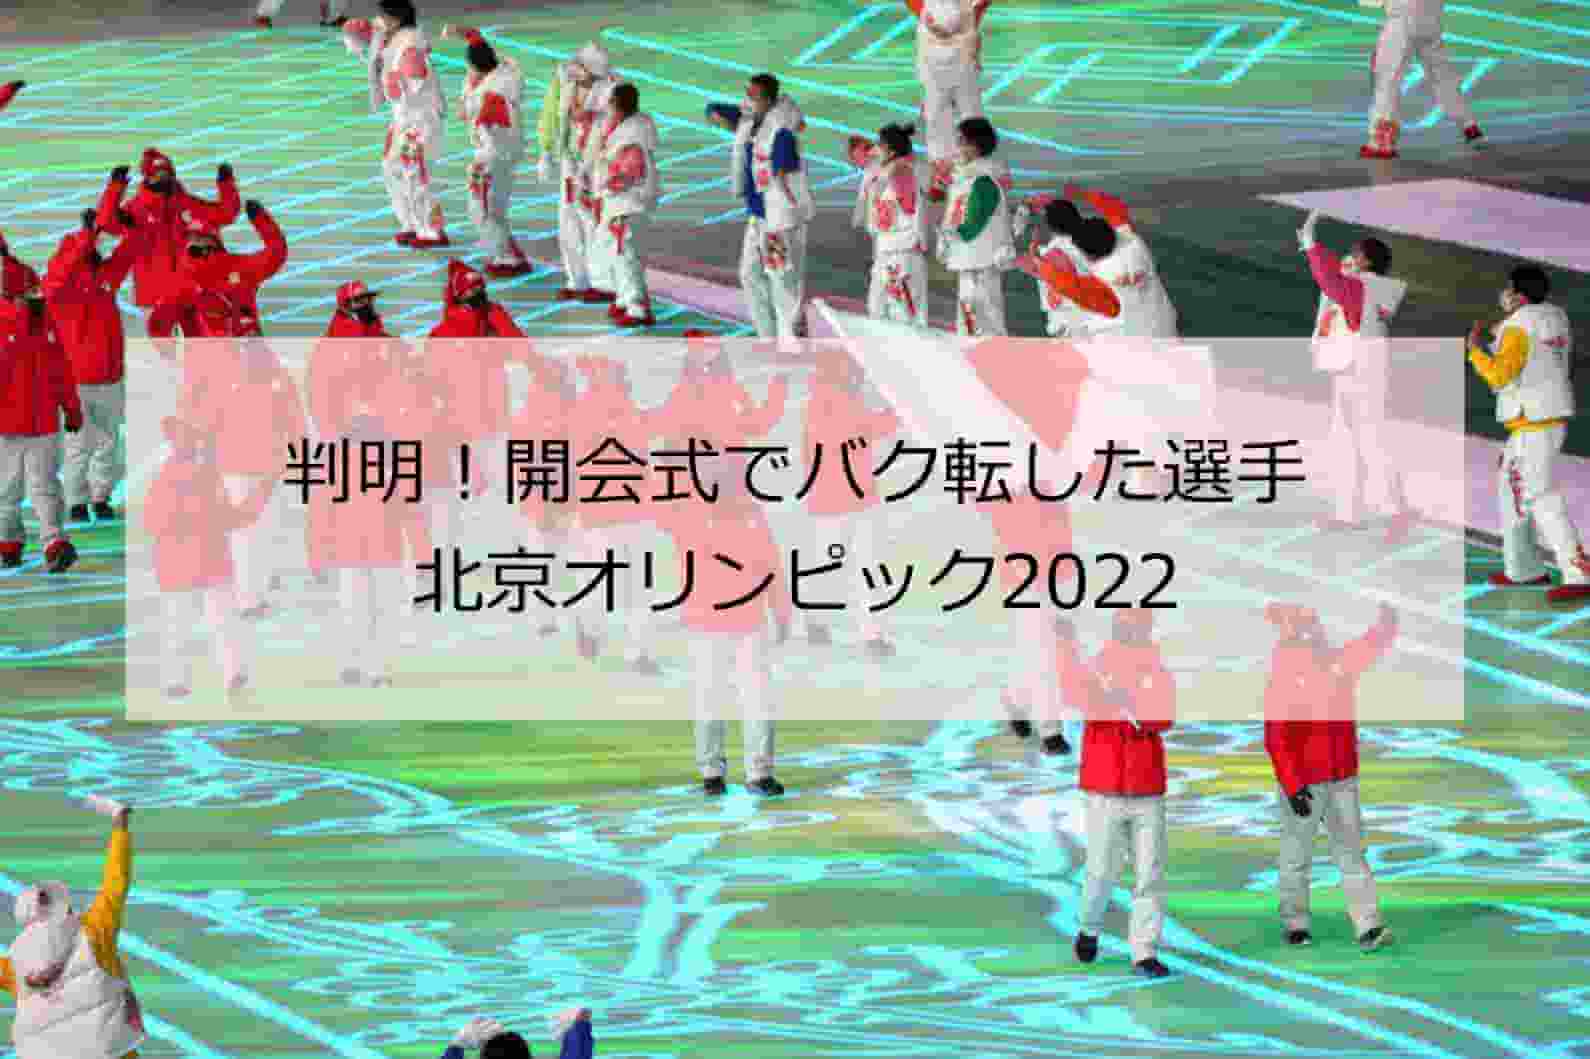 北京五輪 判明 開会式でバク転した日本選手は誰 画像や動画で検証 北京オリンピック22 Taka S Media Journey